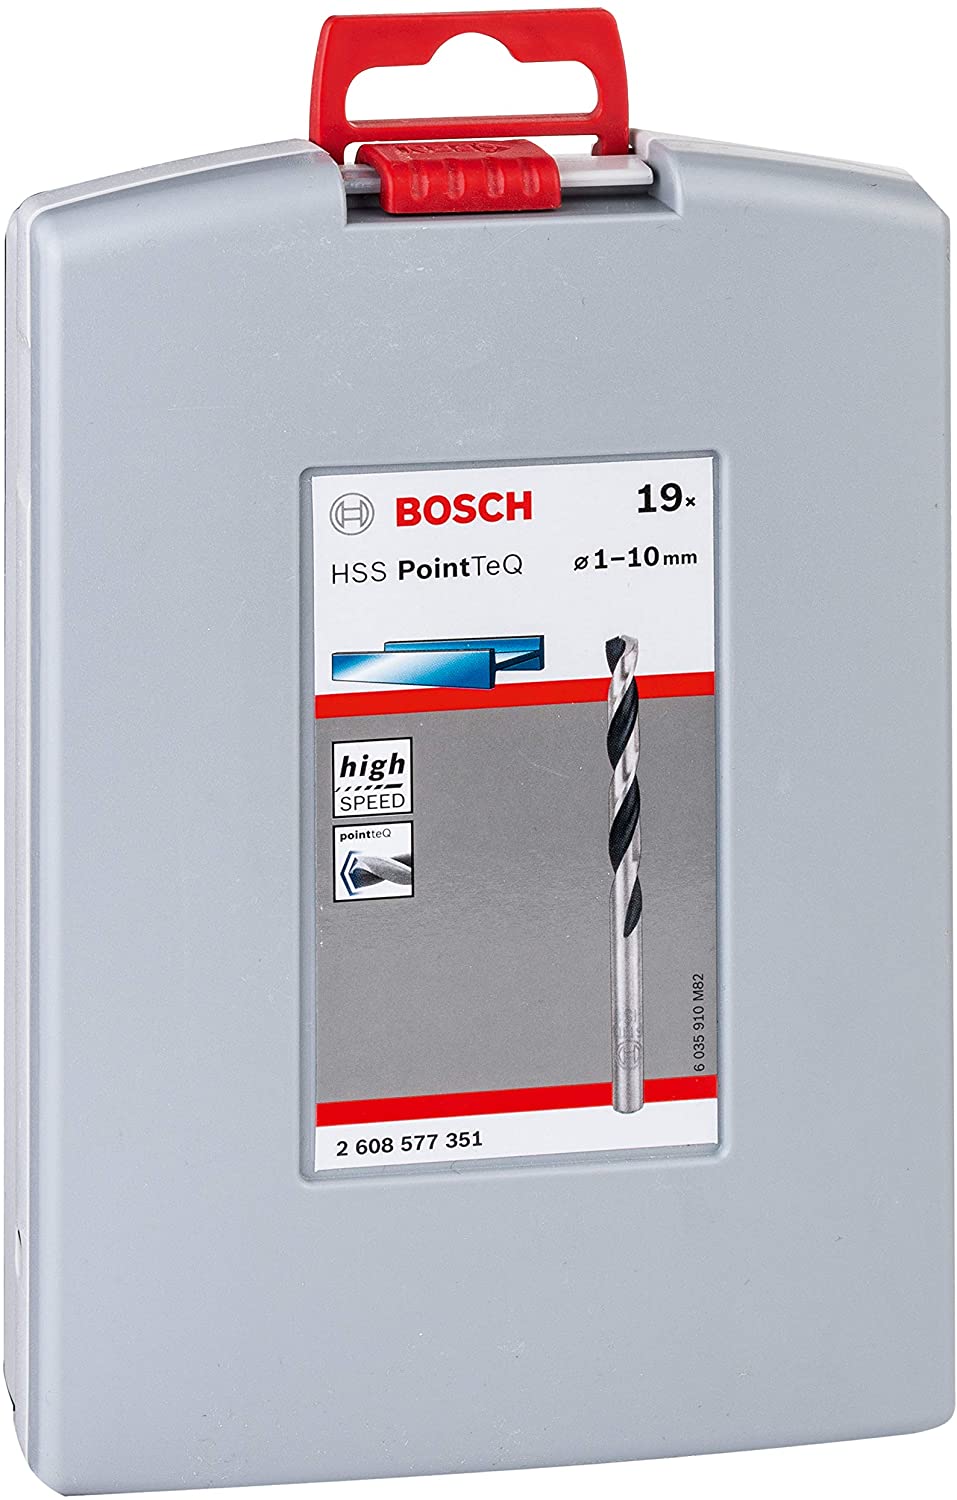 Bosch Professional 19-Piece PointTeQ HSS Drill Bit Set 2608577351 Power Tool Services